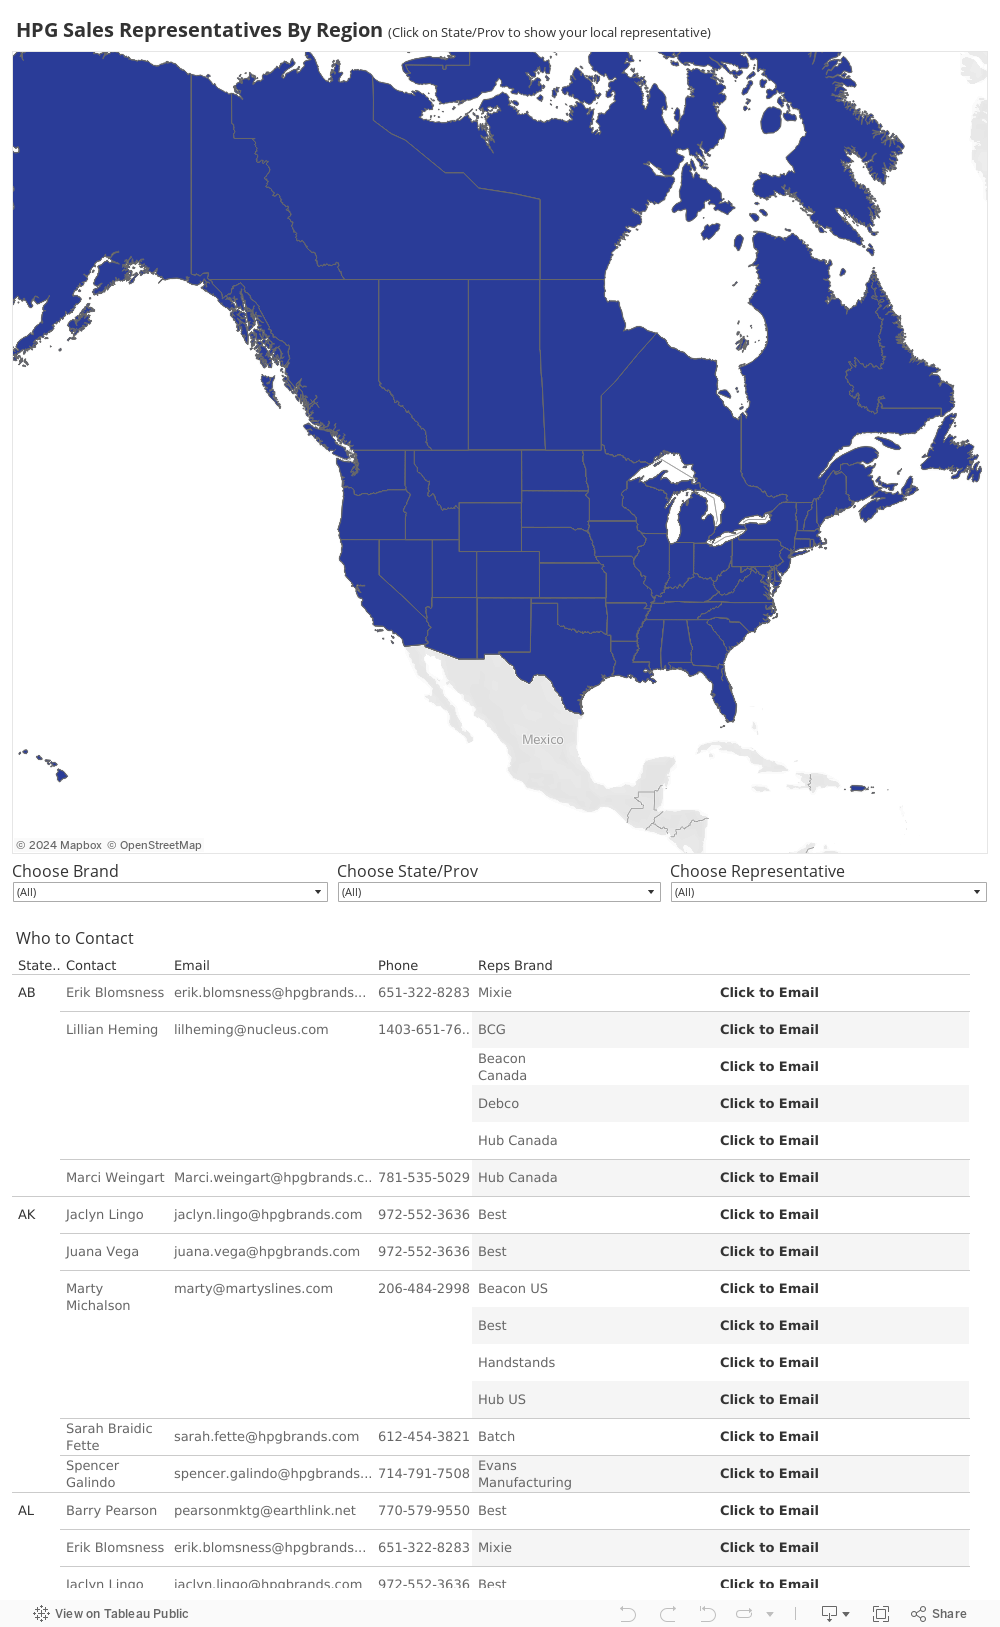 HPG Sales Representative Contact Map 